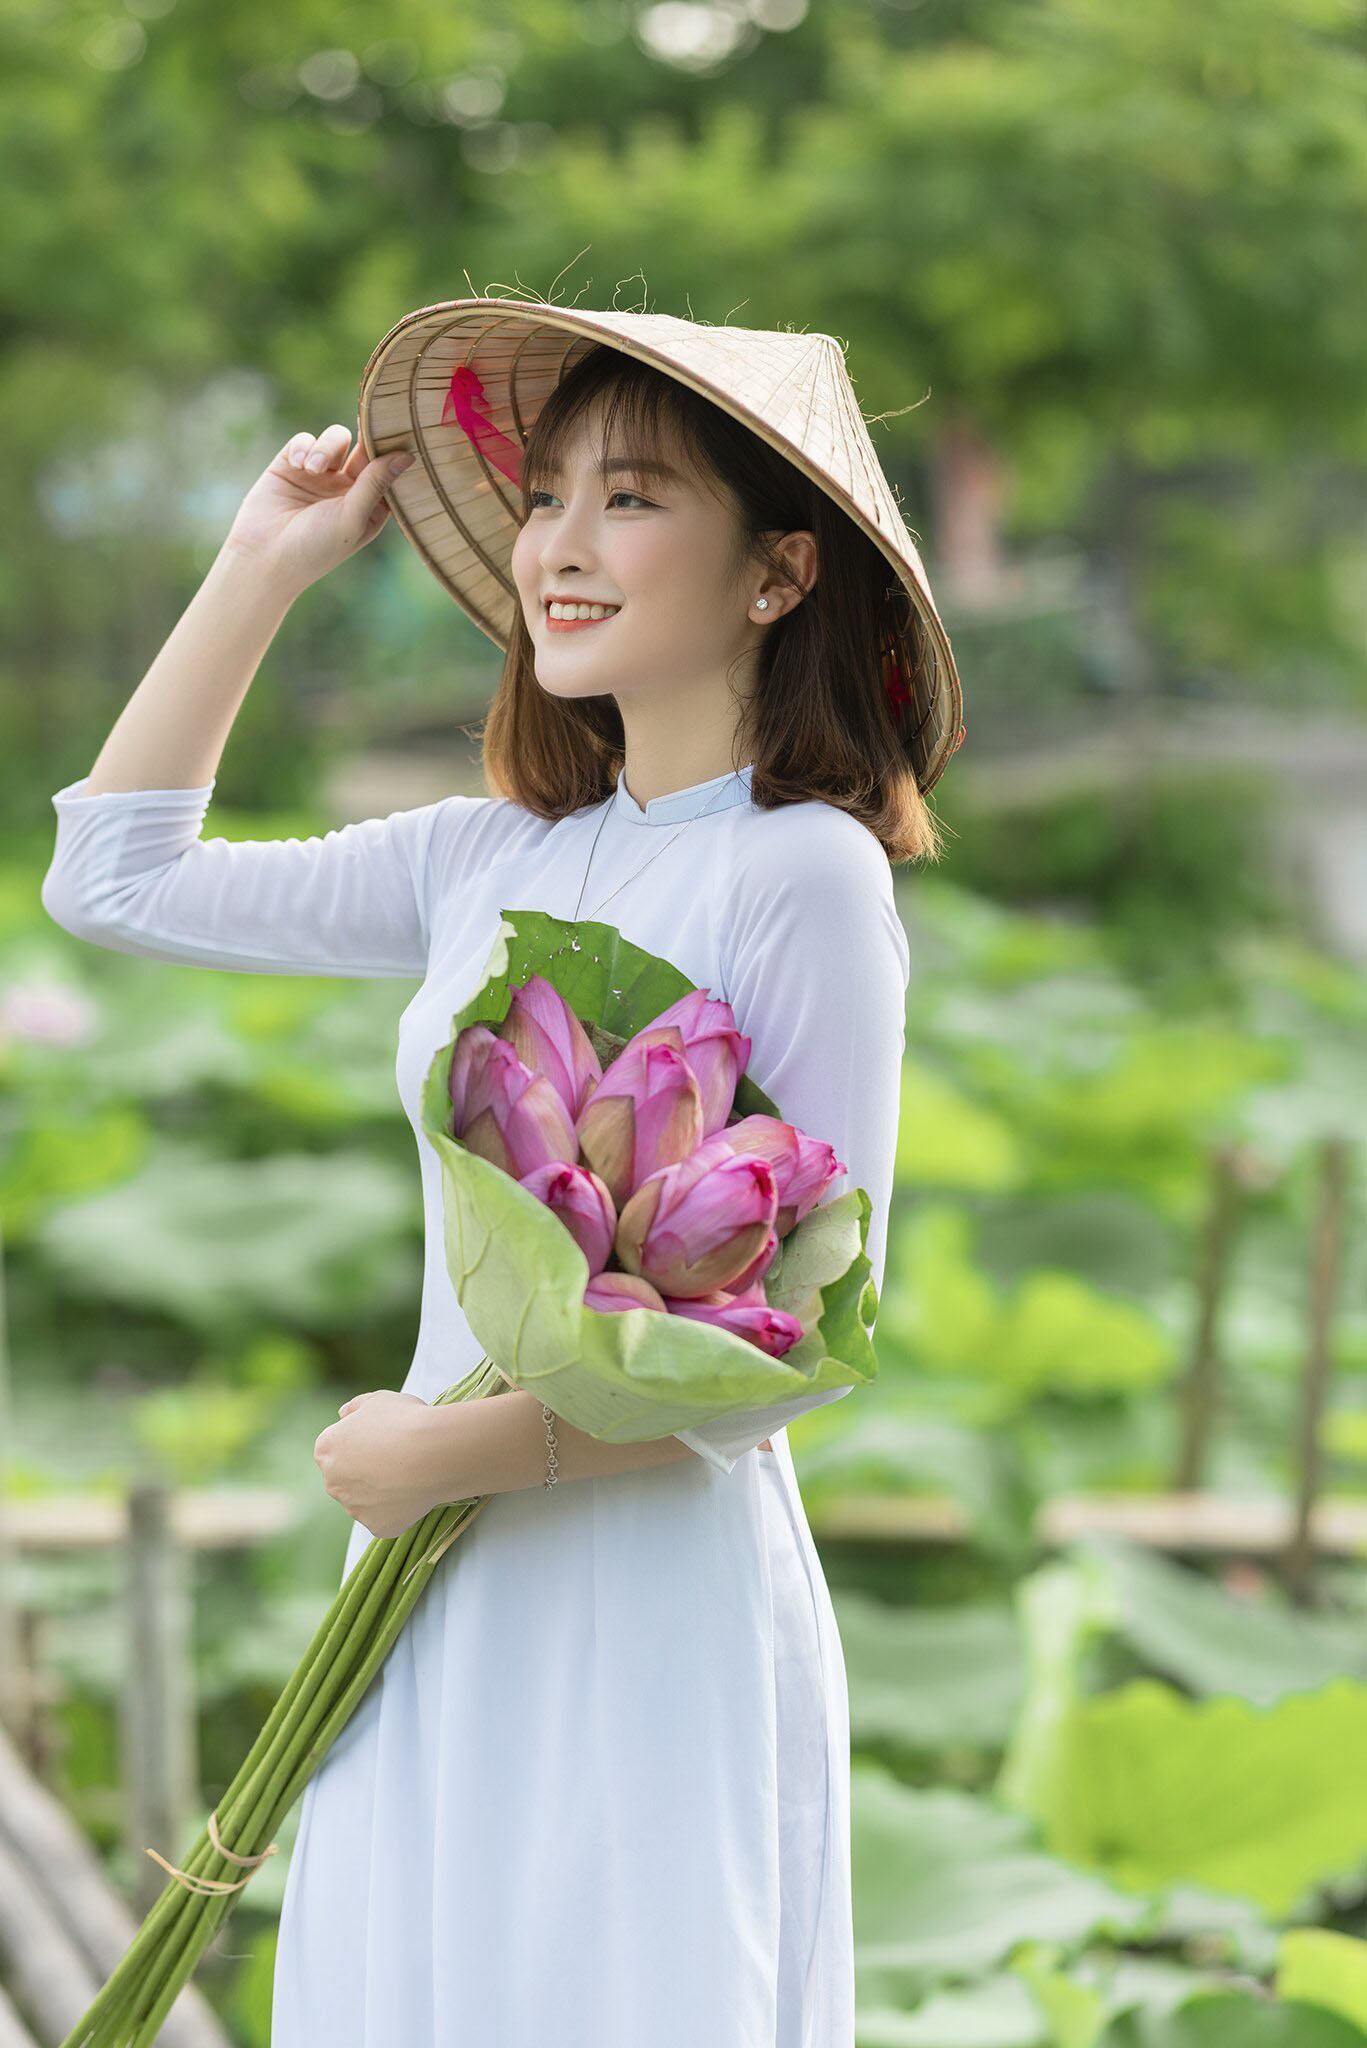 Hình ảnh thiếu nữ cầm hoa đẹp và thơ mộng nhất